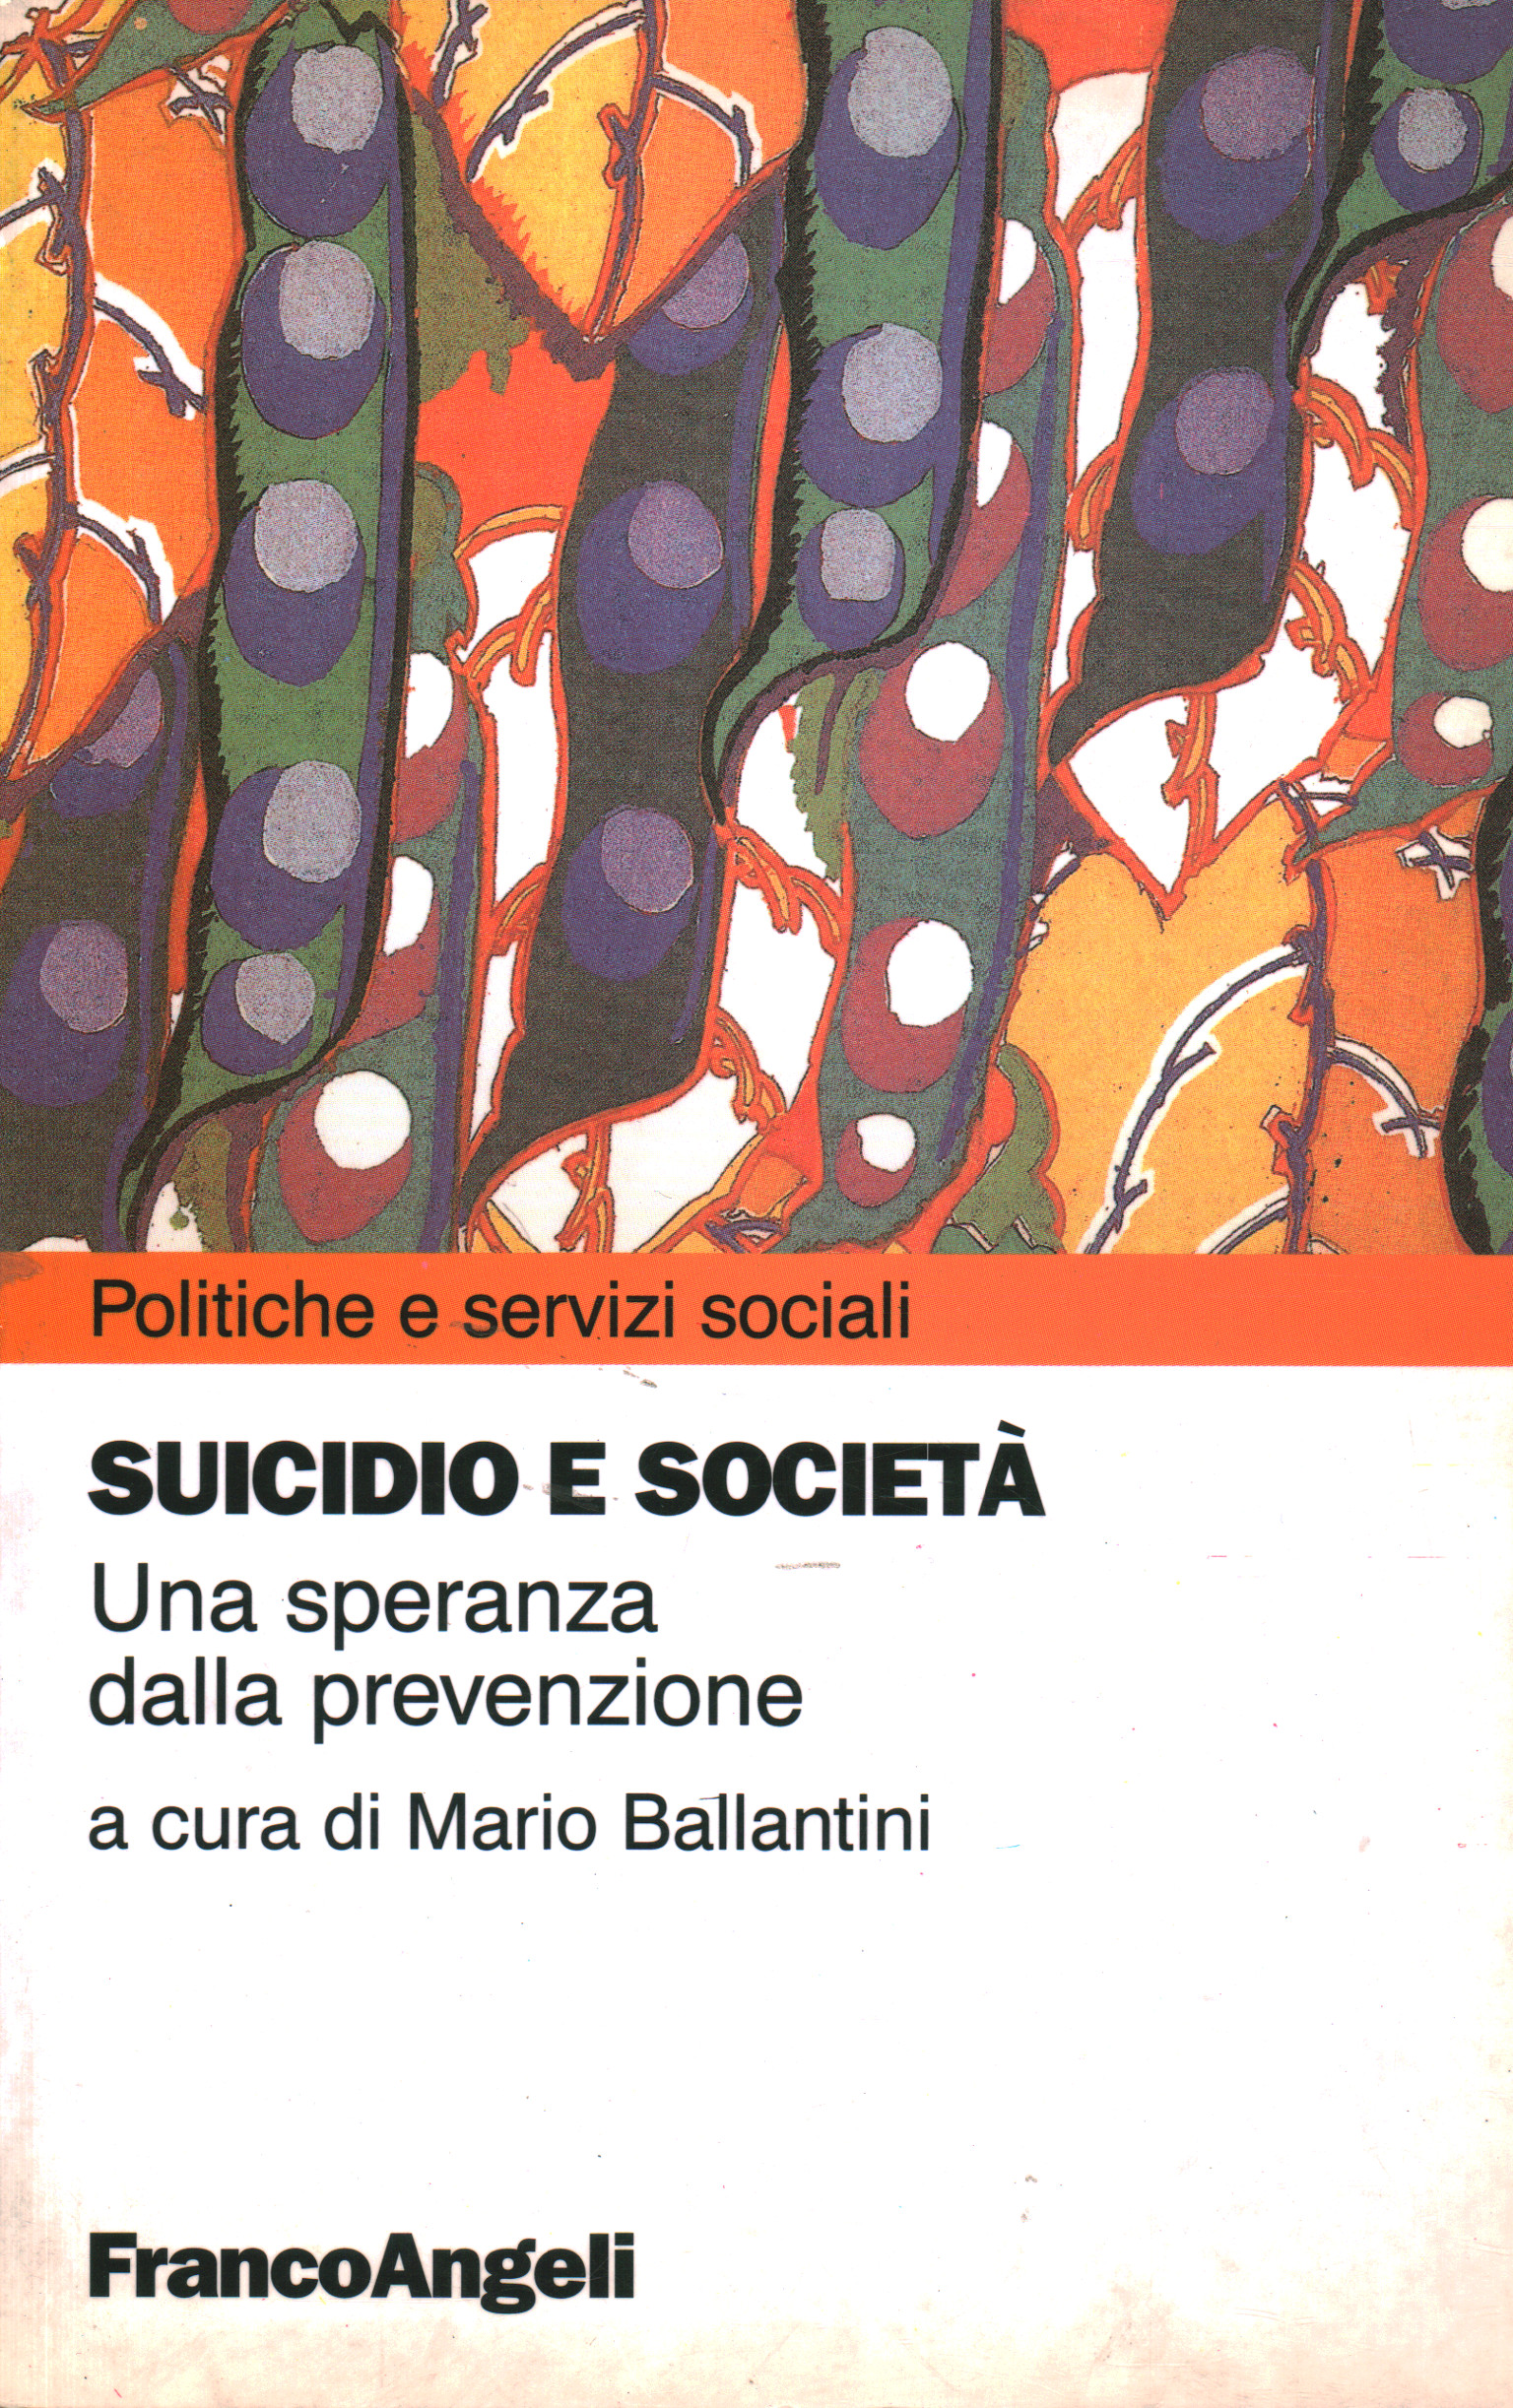 Suicidio e società, Mario Ballantini